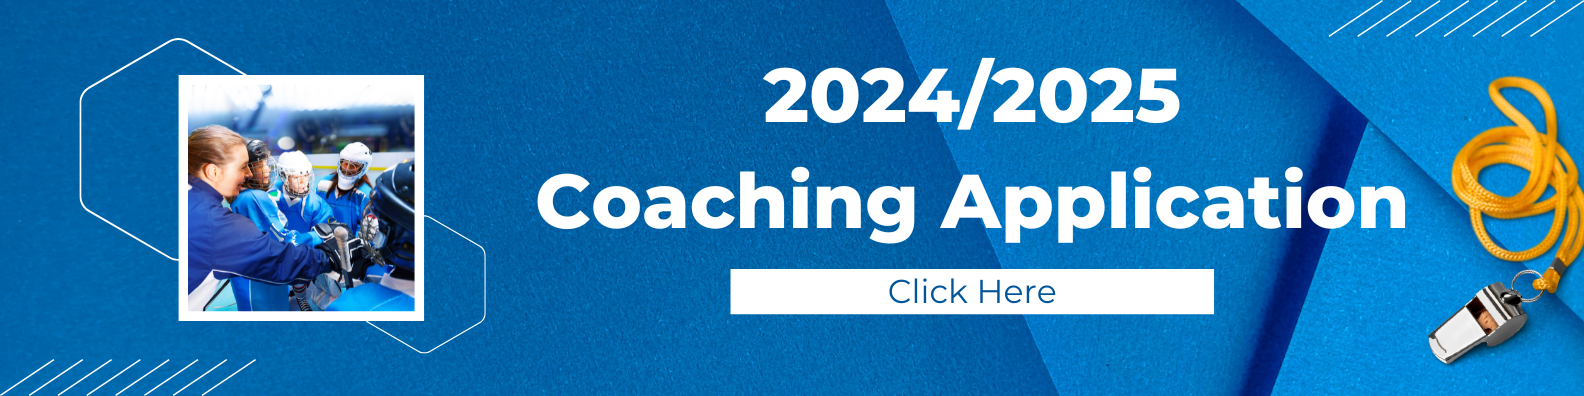 Coaching Application 2024/2025